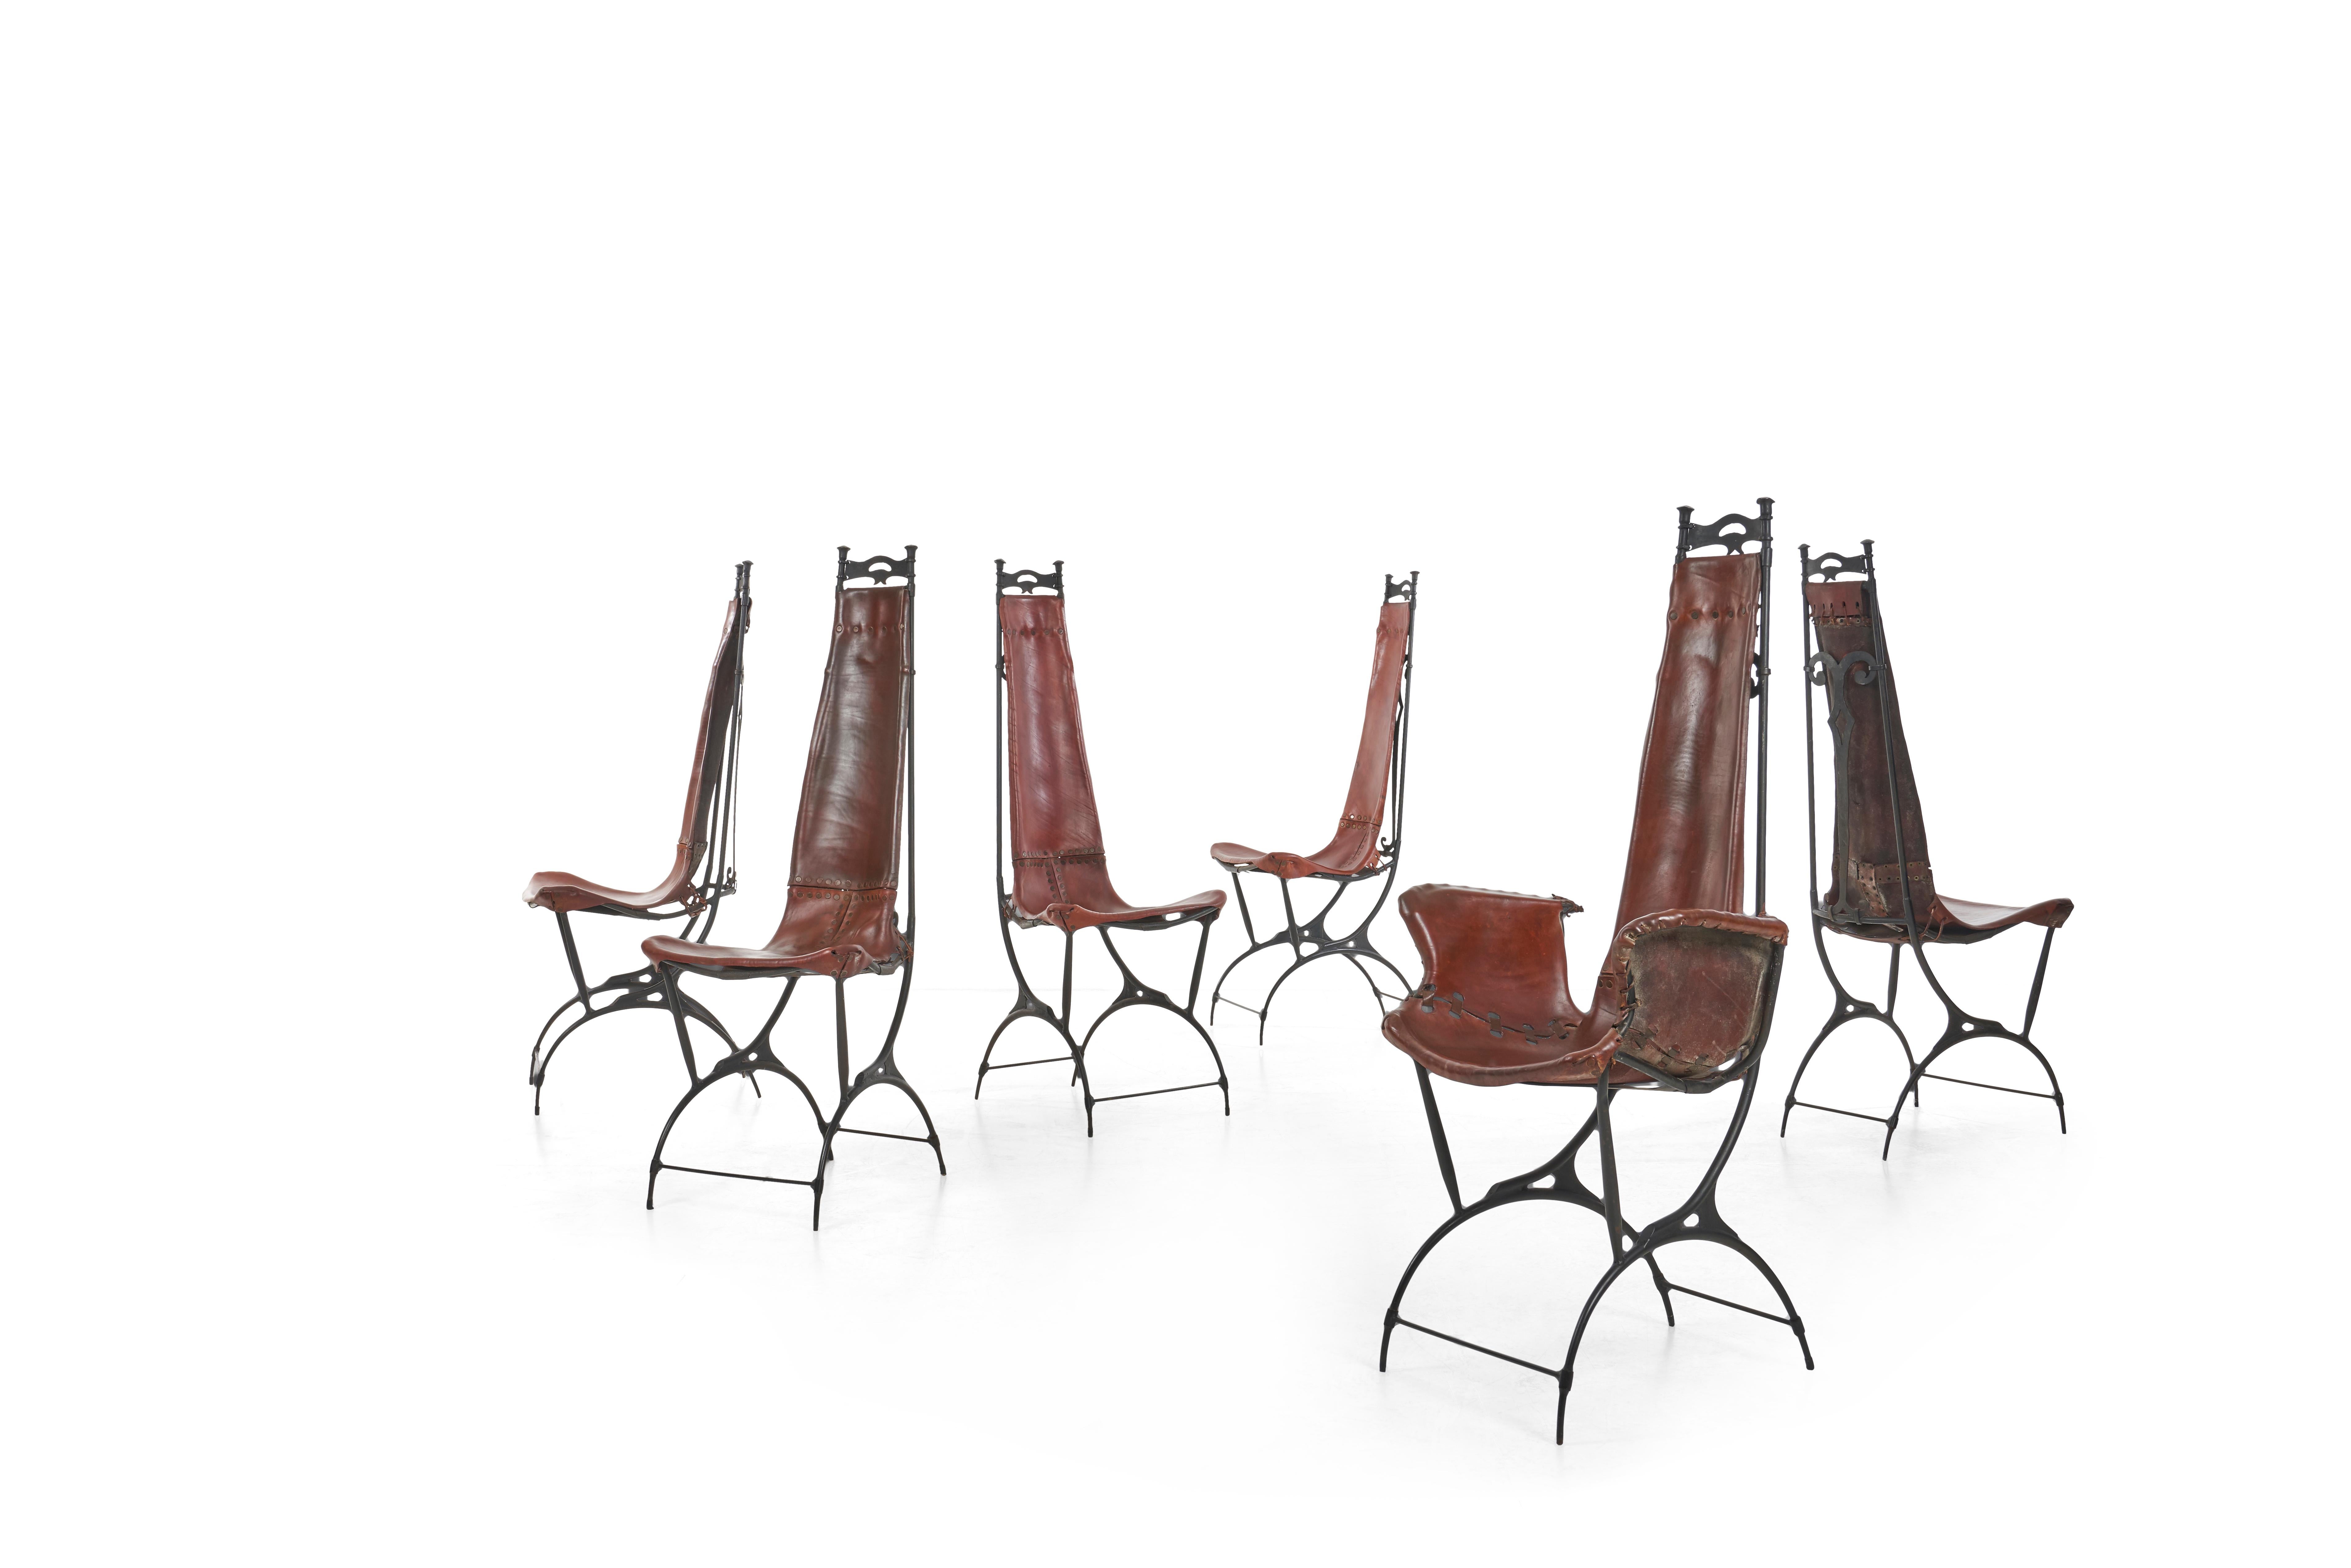 Sido und François Thevenin Esszimmerstühle, 6 Beistellstühle und 2 Sessel,
Handgeschmiedeter Stahl geschnitten und geschweißt, geschnitten und schien Leder mit Messingnieten. Jeder Stuhl ist ein Unikat und hat eine handschriftliche Signatur auf dem